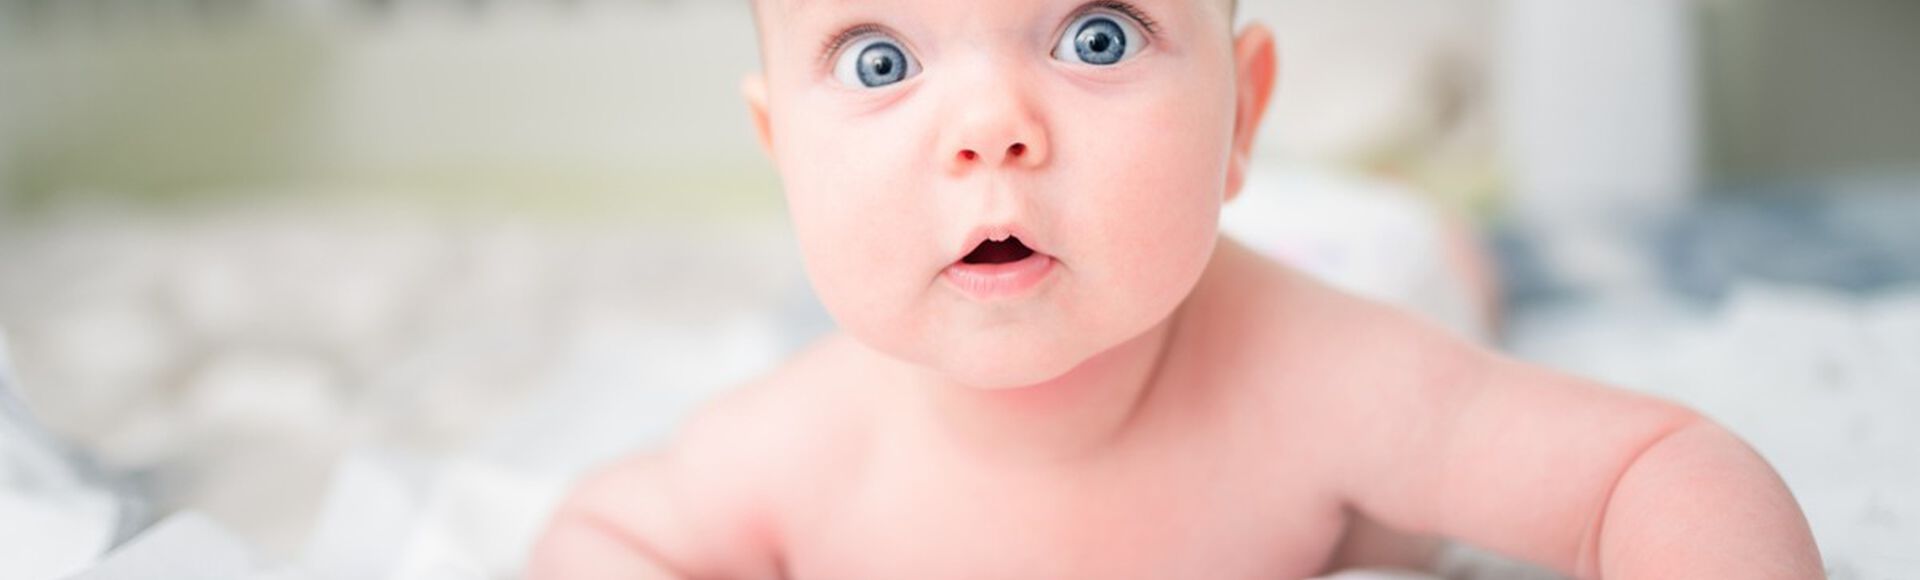 Bebê branco deitado de bruços com olhos azuis bem abertos